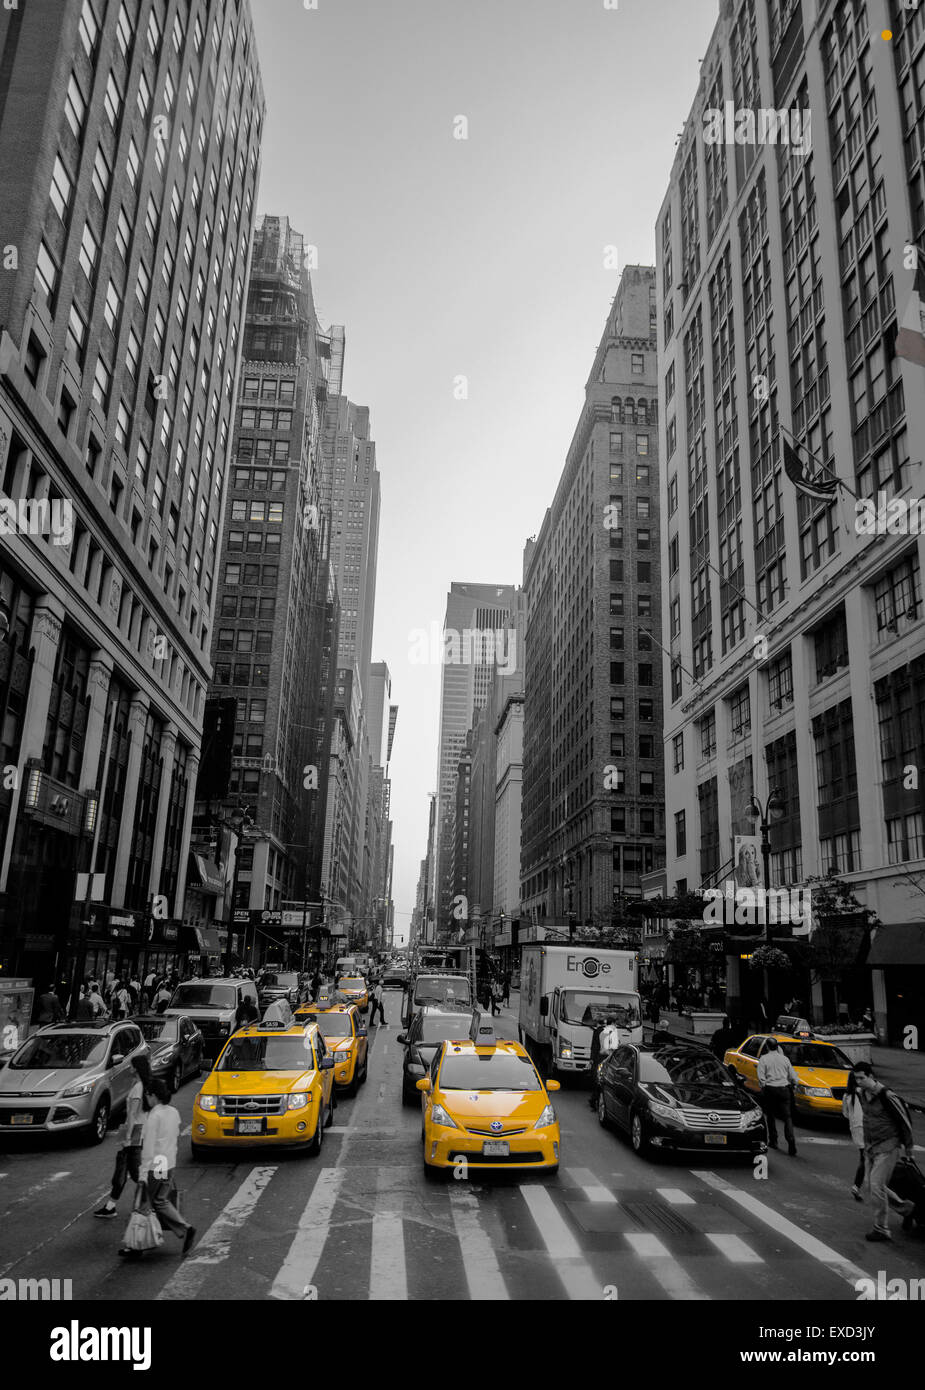 New York grands bâtiments : image en noir et blanc de grands bâtiments à New York avec les taxis et beaucoup de personnes Banque D'Images